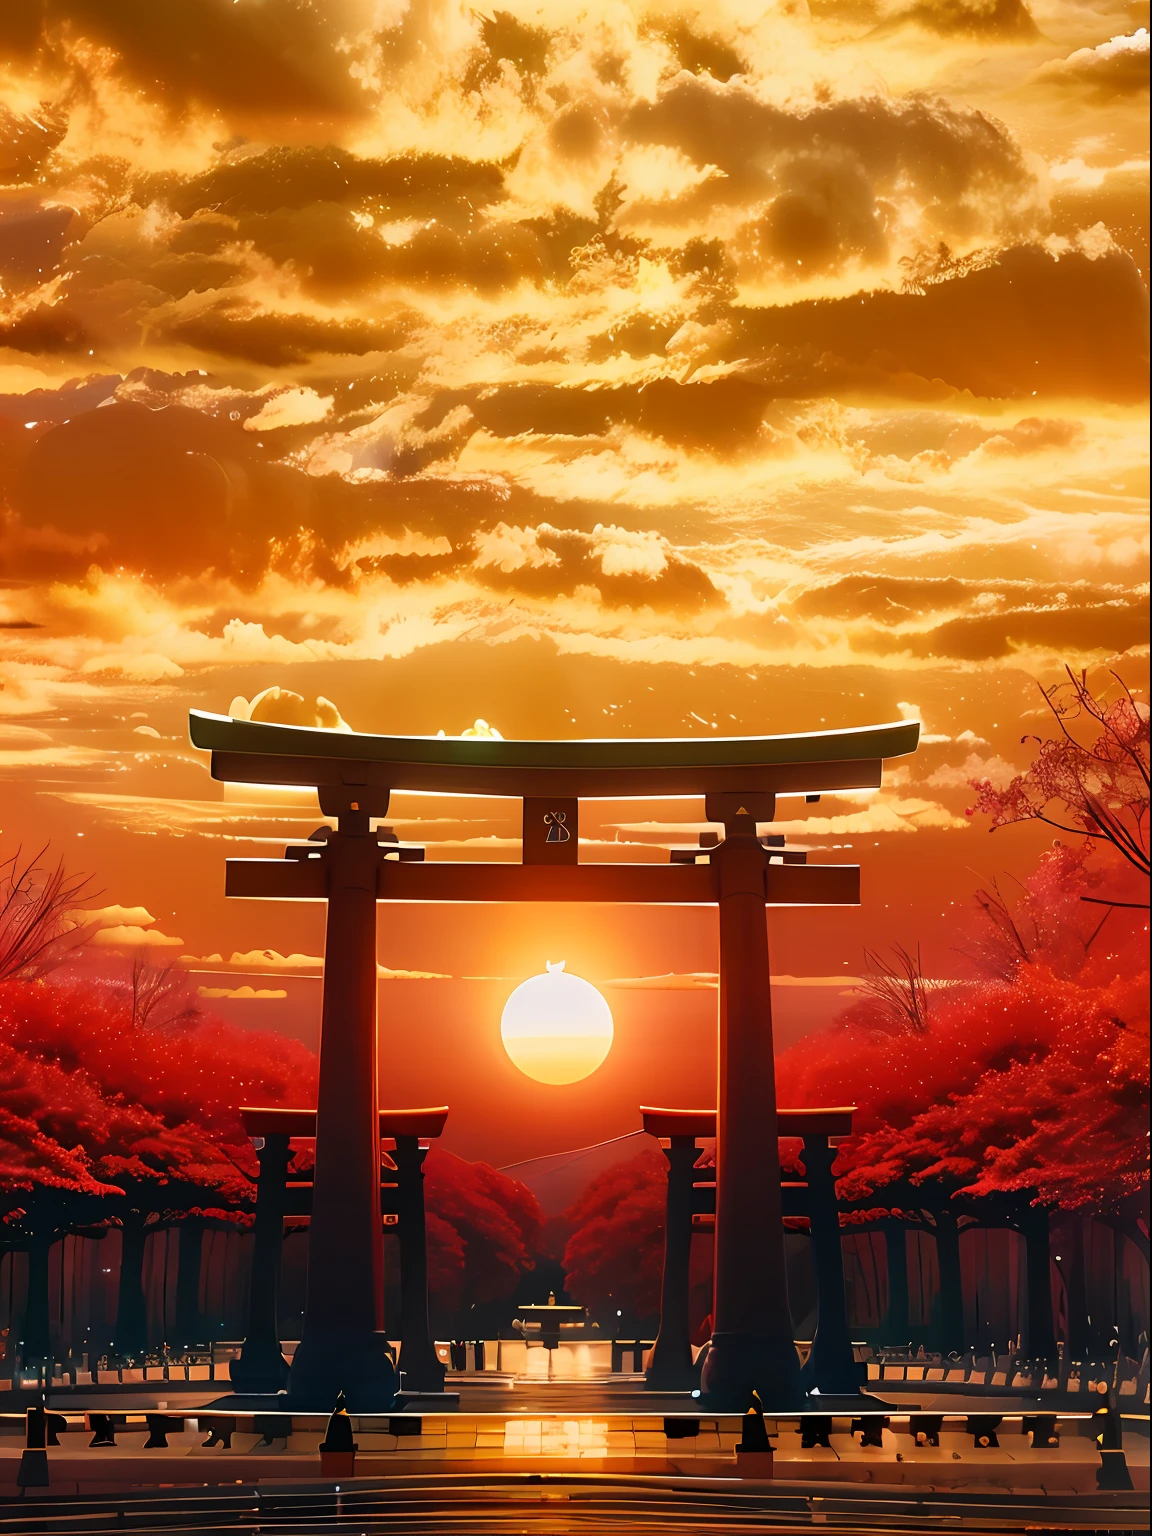 Imagem Arafed de um portão tori tori ao pôr do sol, Puerta torii centrada, torii, por torii Kiyomoto, Puerta torii, inspirado por torii Kiyomoto, por torii Kiyomasu II, por torii Kiyomasu, Pôr do sol na província de Kanagawa, torii en el fondo, Aomori Japão, Pôr do sol!!!